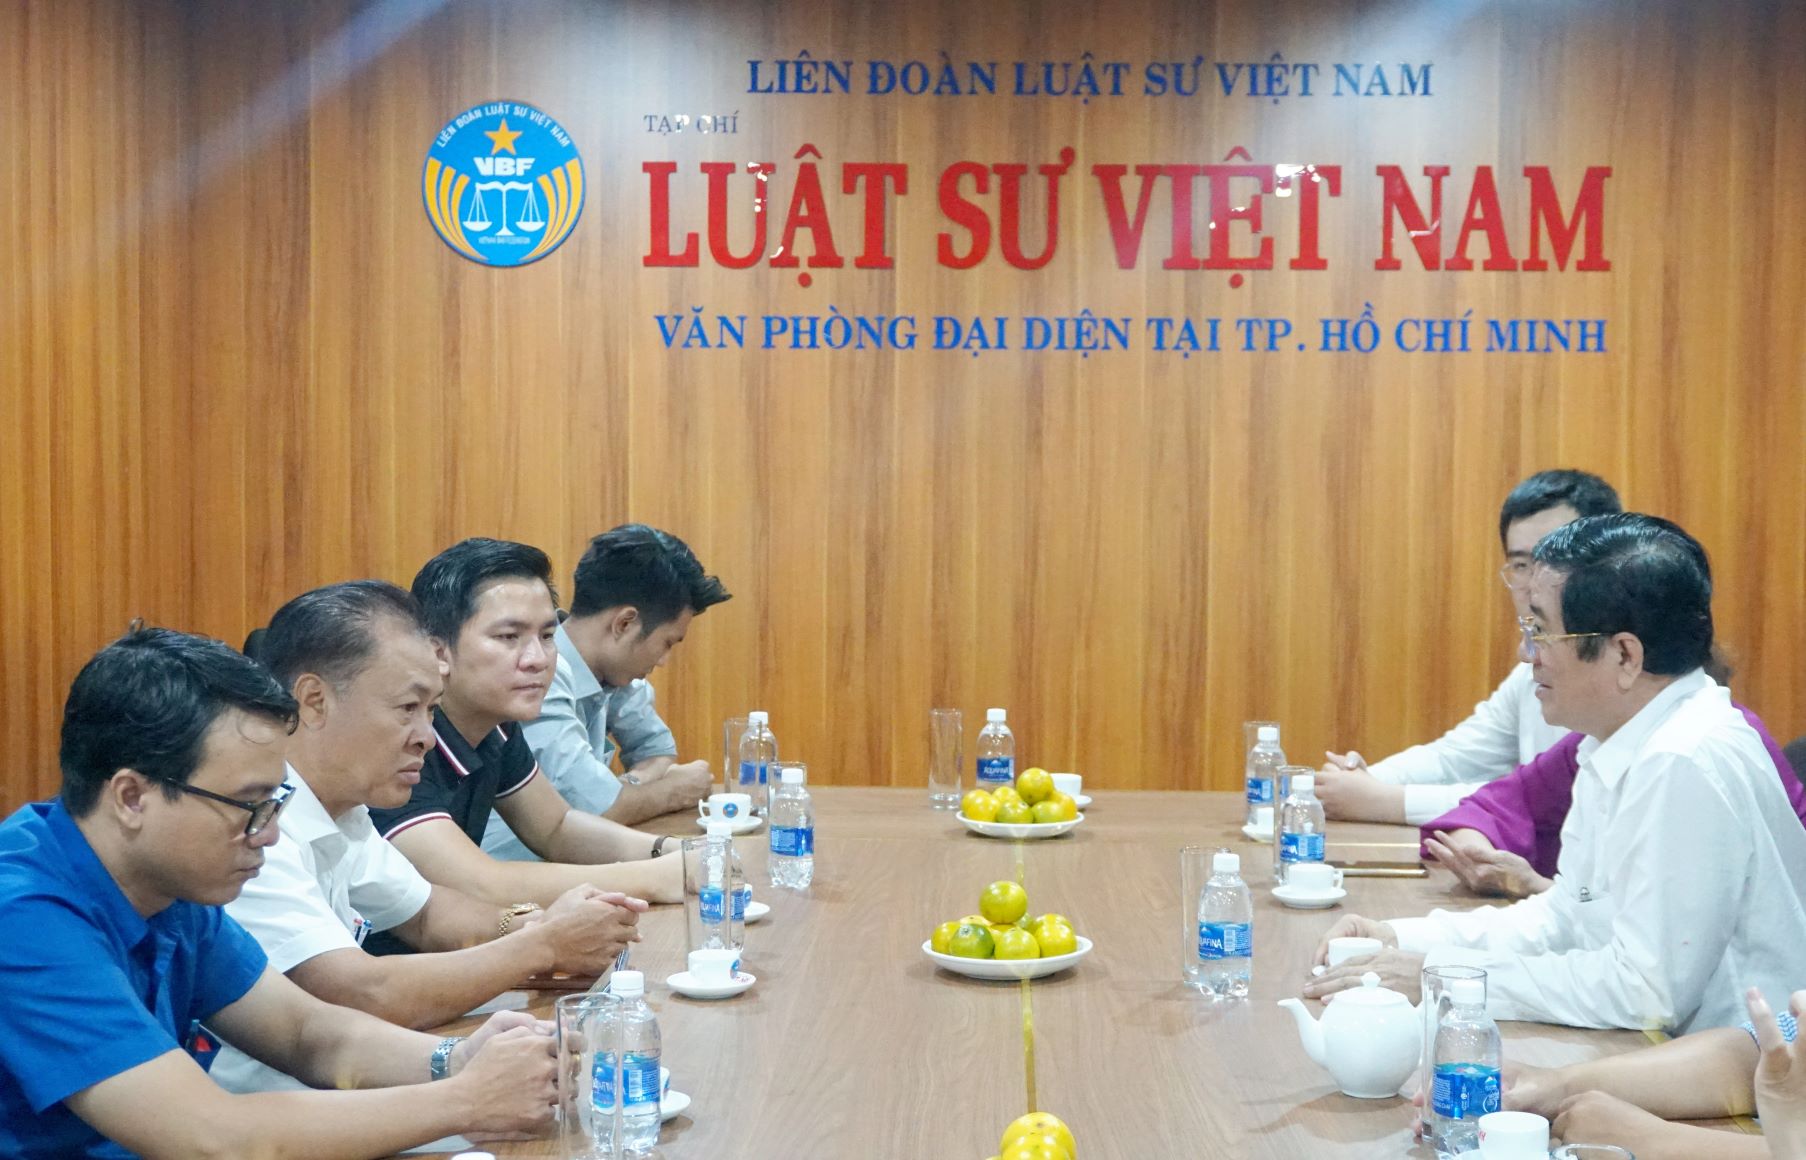 Liên đoàn luật sư Việt Nam là gì? Các cơ quan của Liên đoàn luật sư Việt Nam